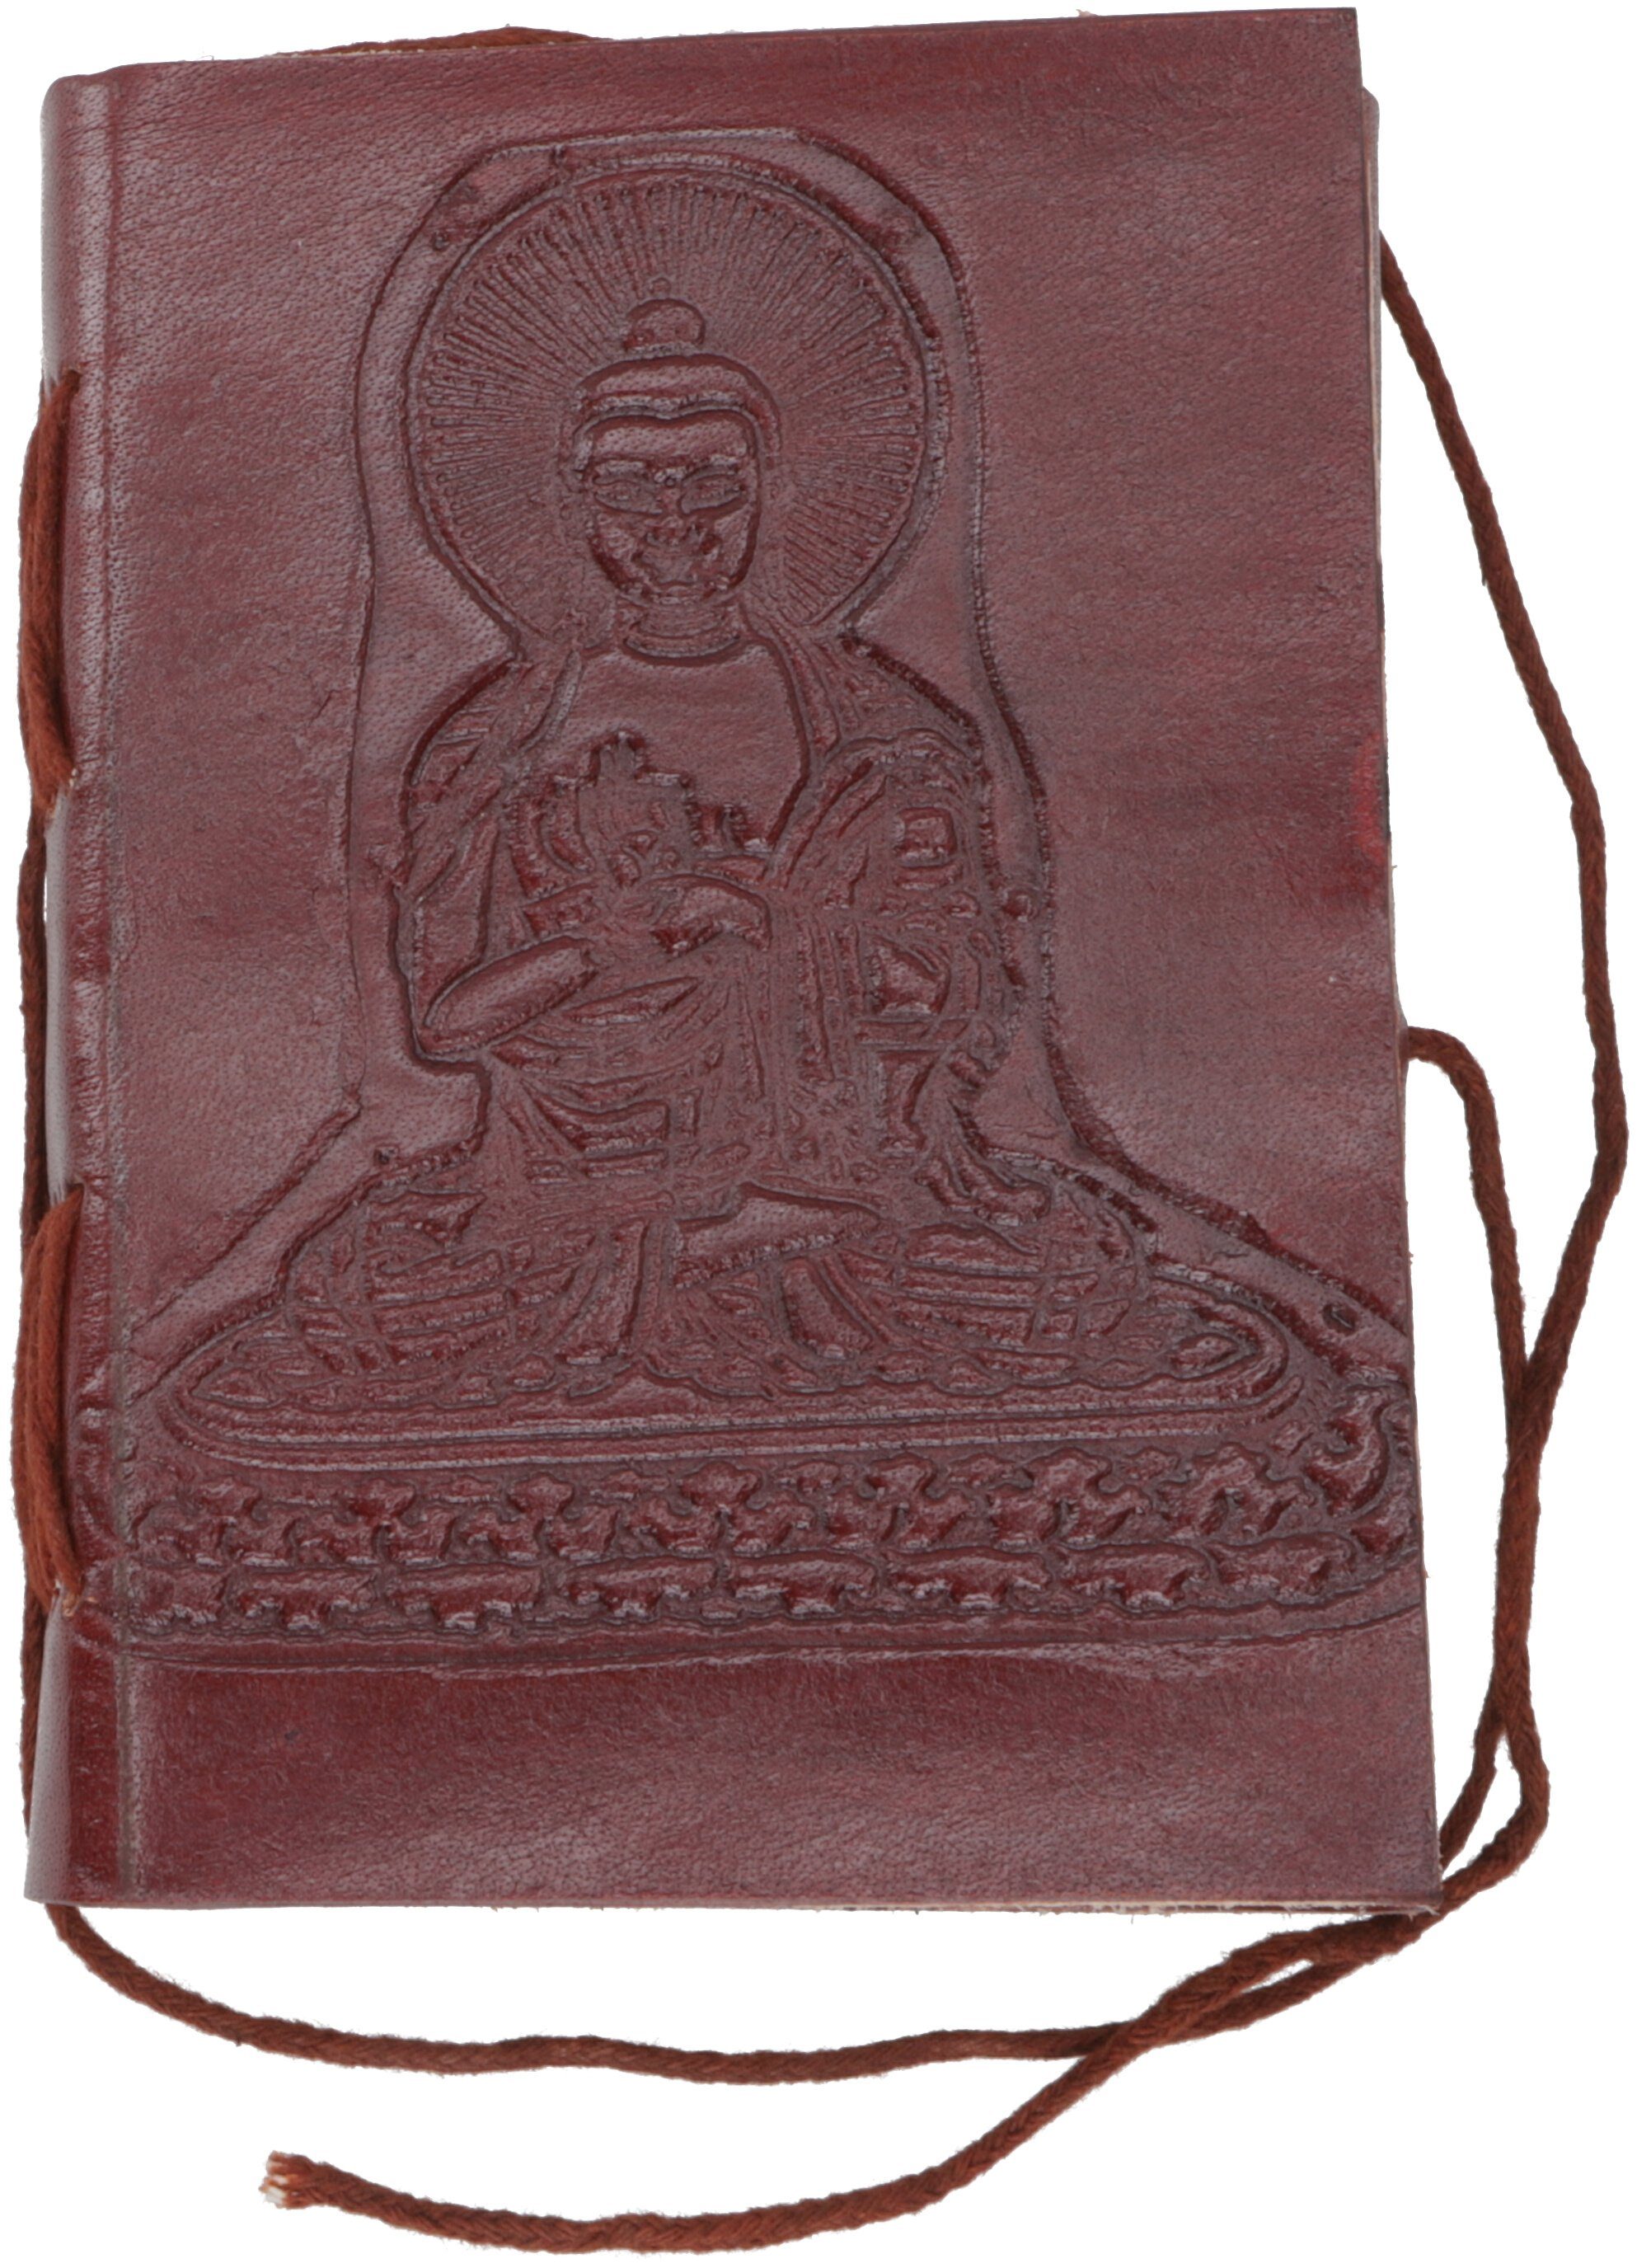 9*12 Tagebuch mit Guru-Shop Buddha/ Tagebuch Notizbuch, Lederbuch, Ledereinband.. cm